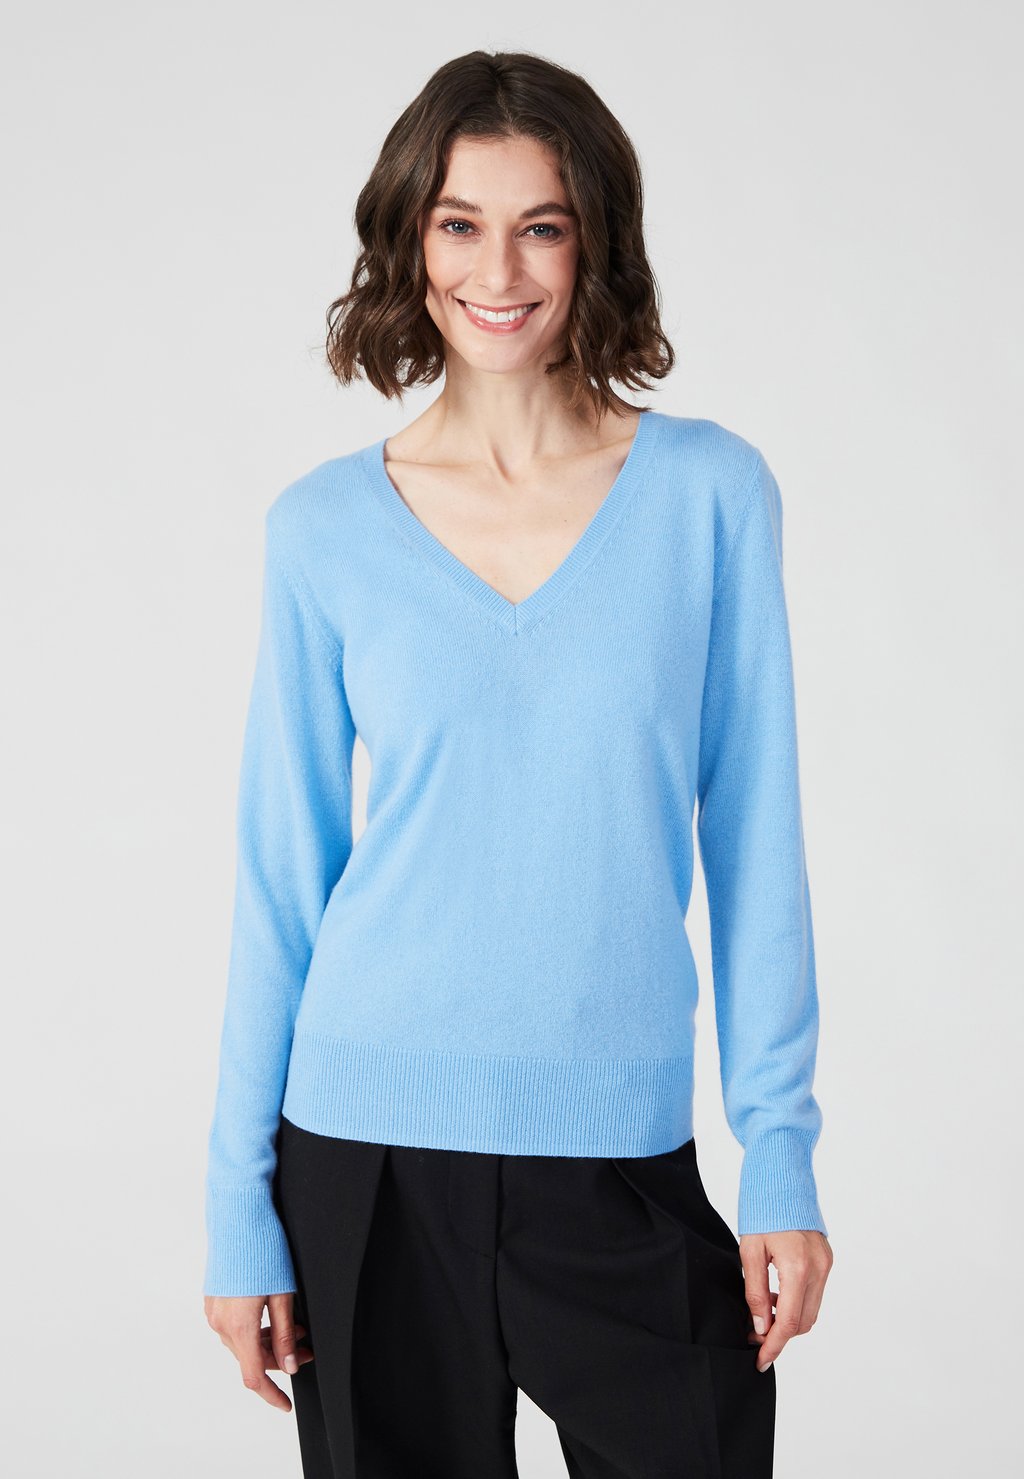 вязаный свитер v neck style republic цвет fancy blue Вязаный свитер V NECK Style Republic, цвет icy blue